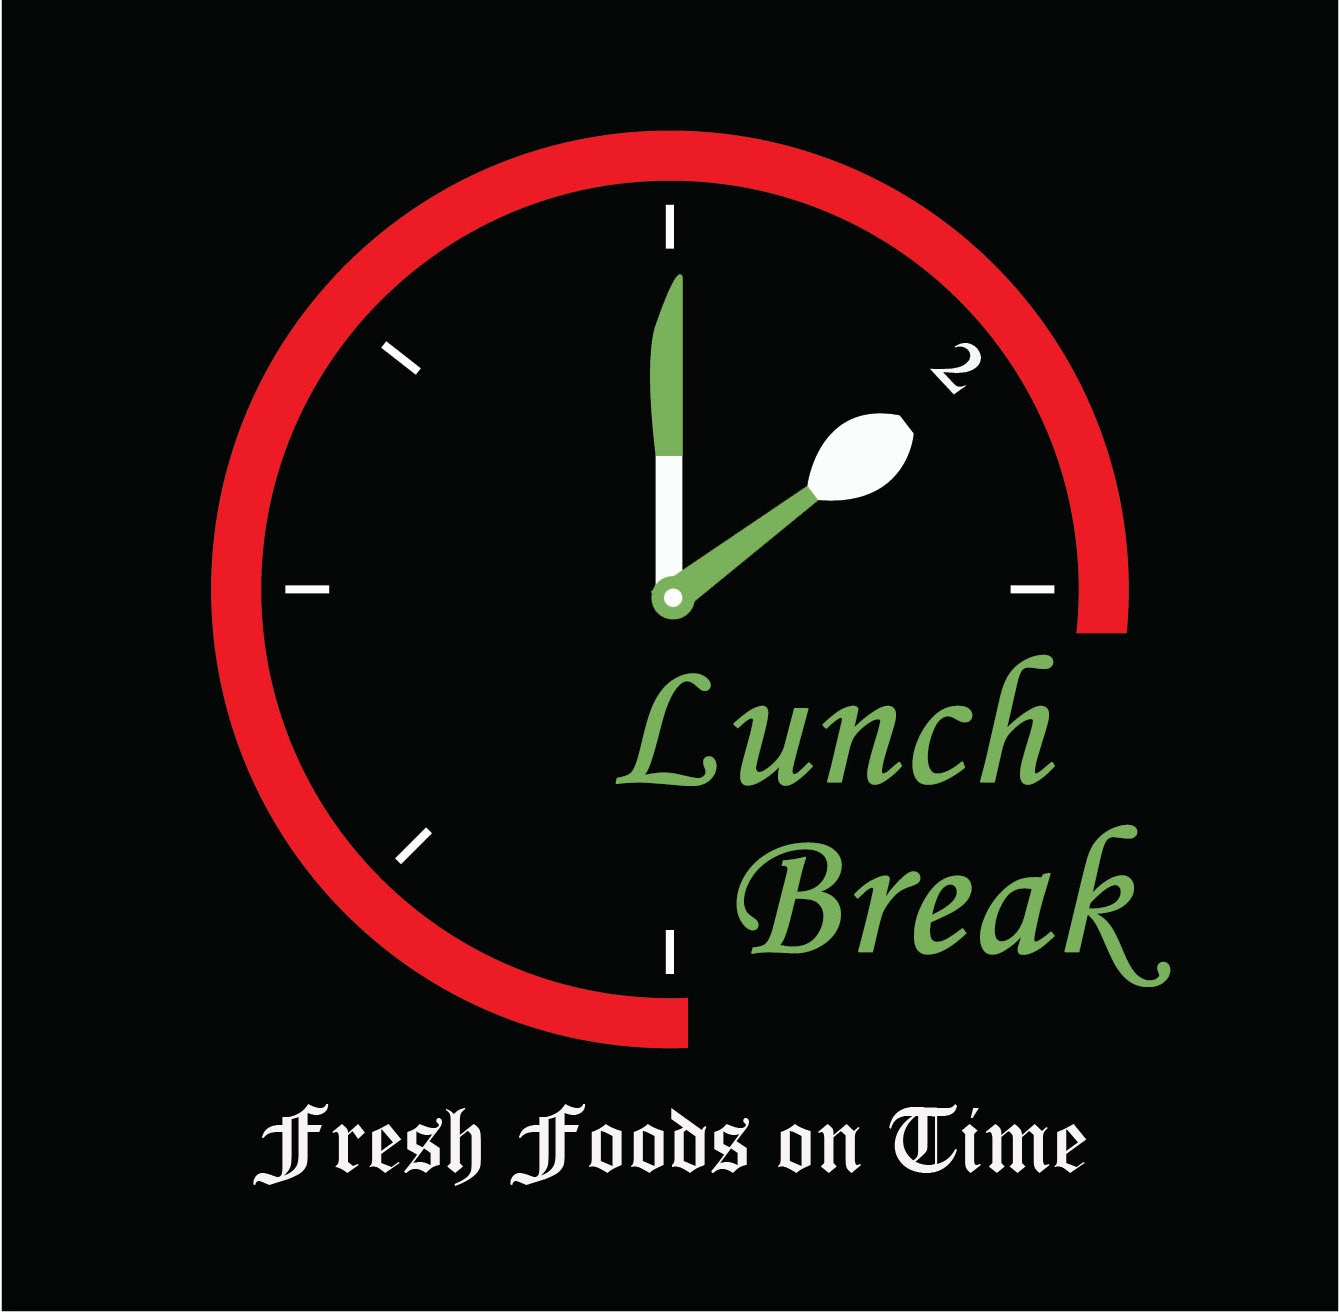 lunch break logo